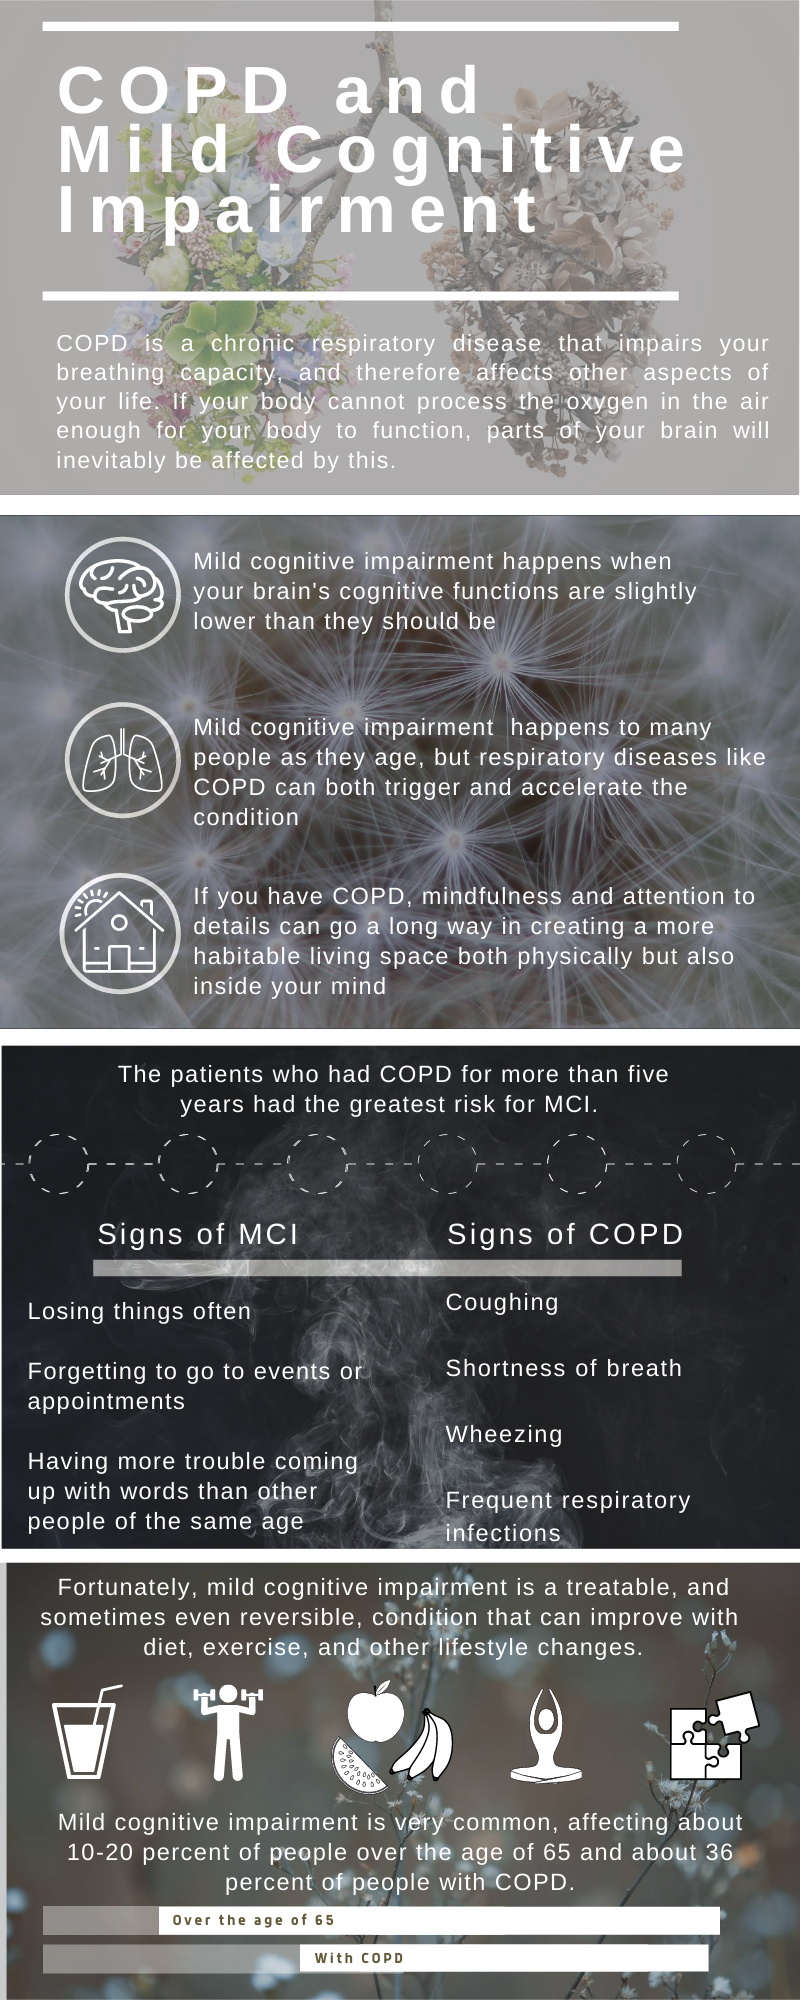 COPD and Mild Cognitive Impairment